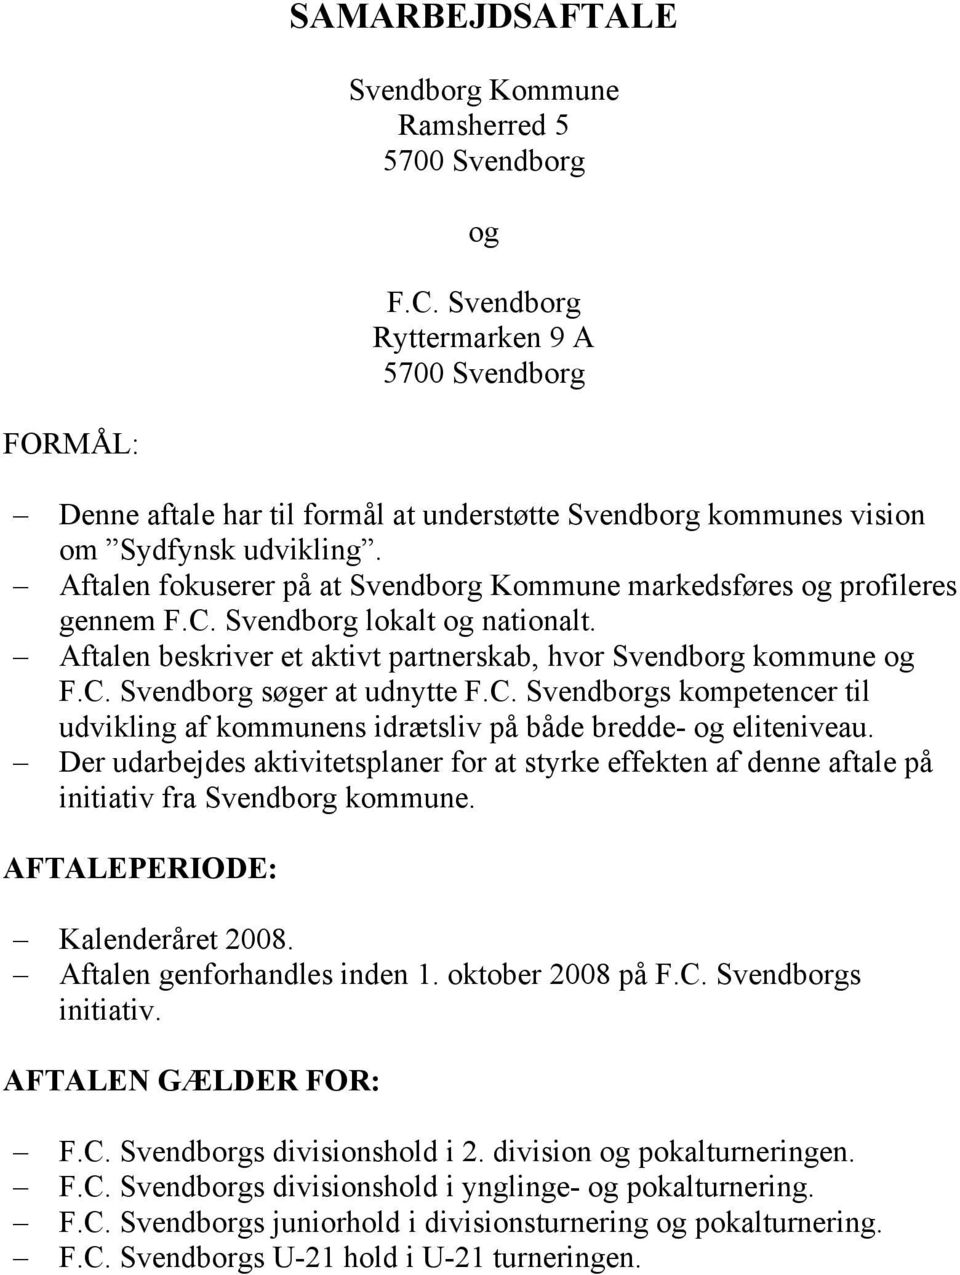 Aftalen fokuserer på at Svendborg Kommune markedsføres og profileres gennem F.C. Svendborg lokalt og nationalt. Aftalen beskriver et aktivt partnerskab, hvor Svendborg kommune og F.C. Svendborg søger at udnytte F.